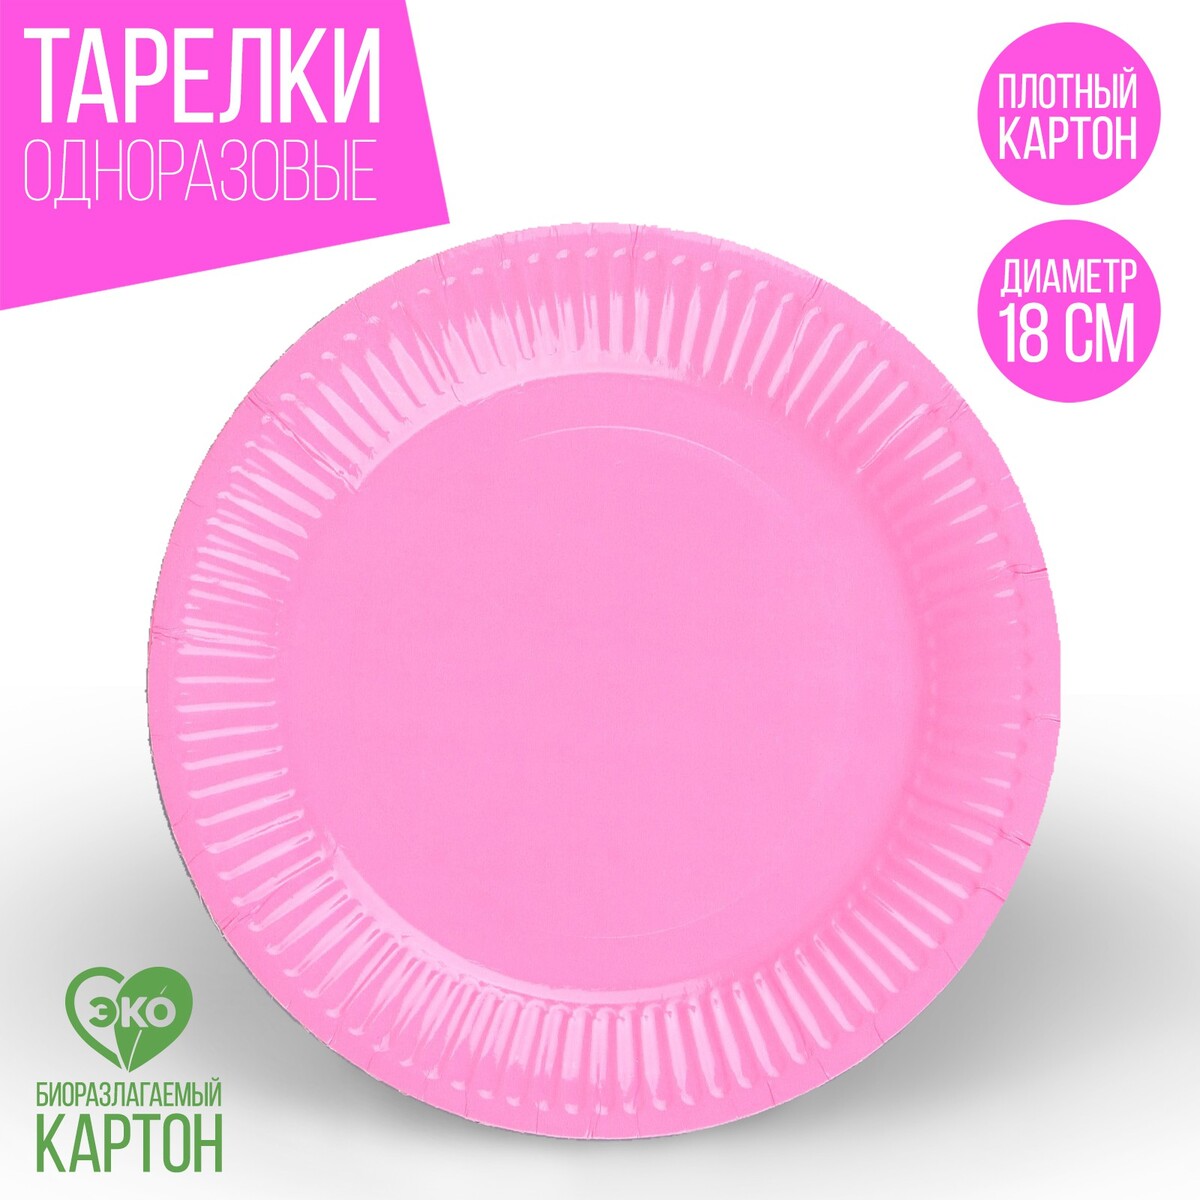 Тарелка одноразовая бумажная однотонная, цвет розовый 18 см, набор 10 штук бумажная растушёвка сонет 8 штук